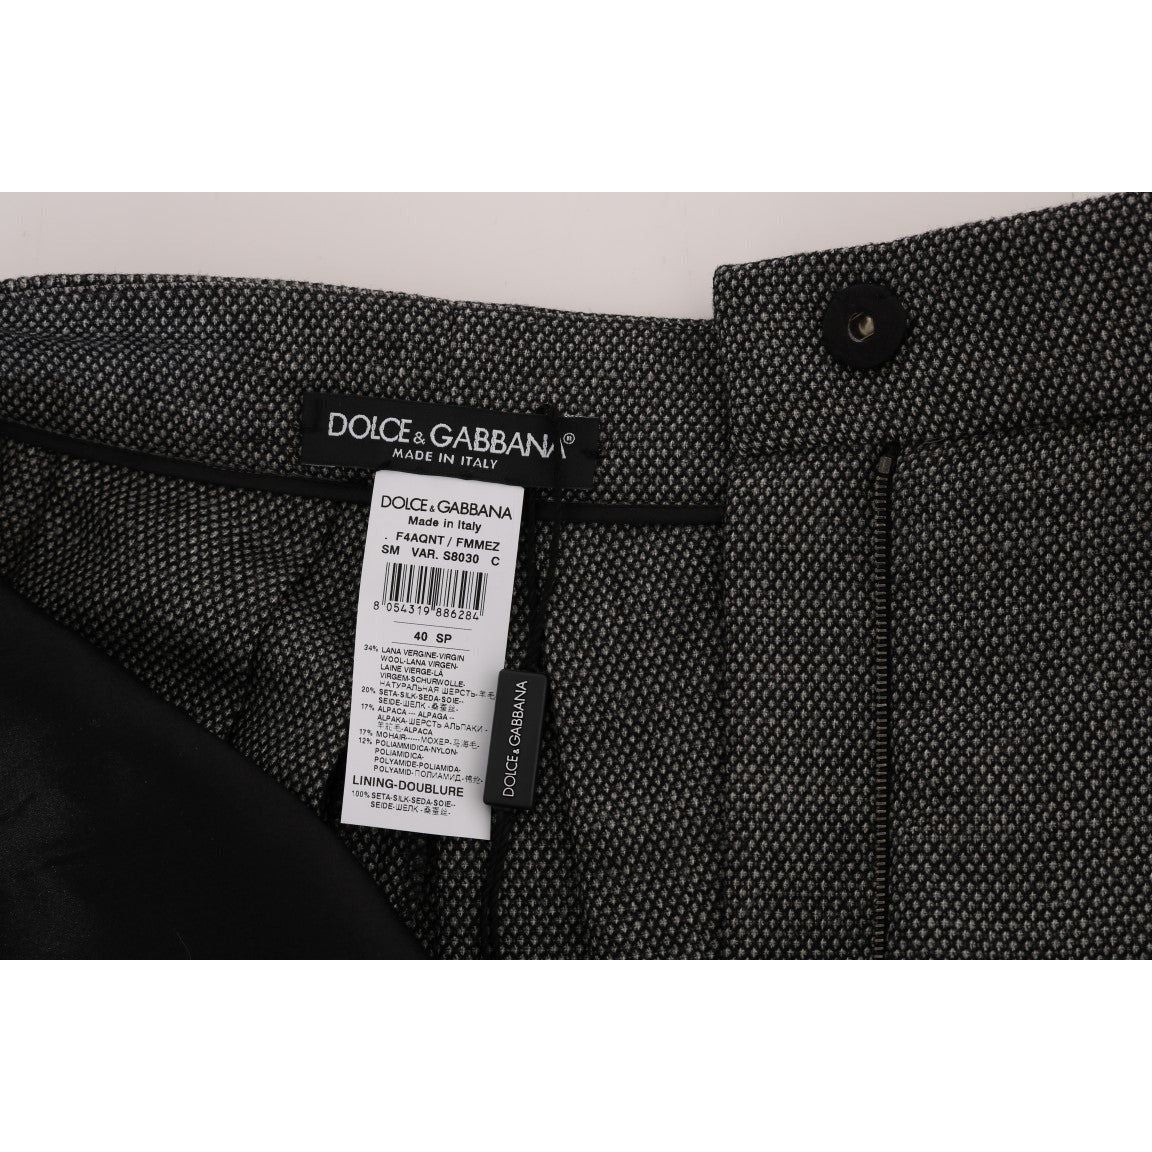 Dolce & Gabbana Chic High Waist Wool Mini Shorts gray-wool-high-waist-mini-shorts 466960-gray-wool-high-waist-mini-shorts-4.jpg